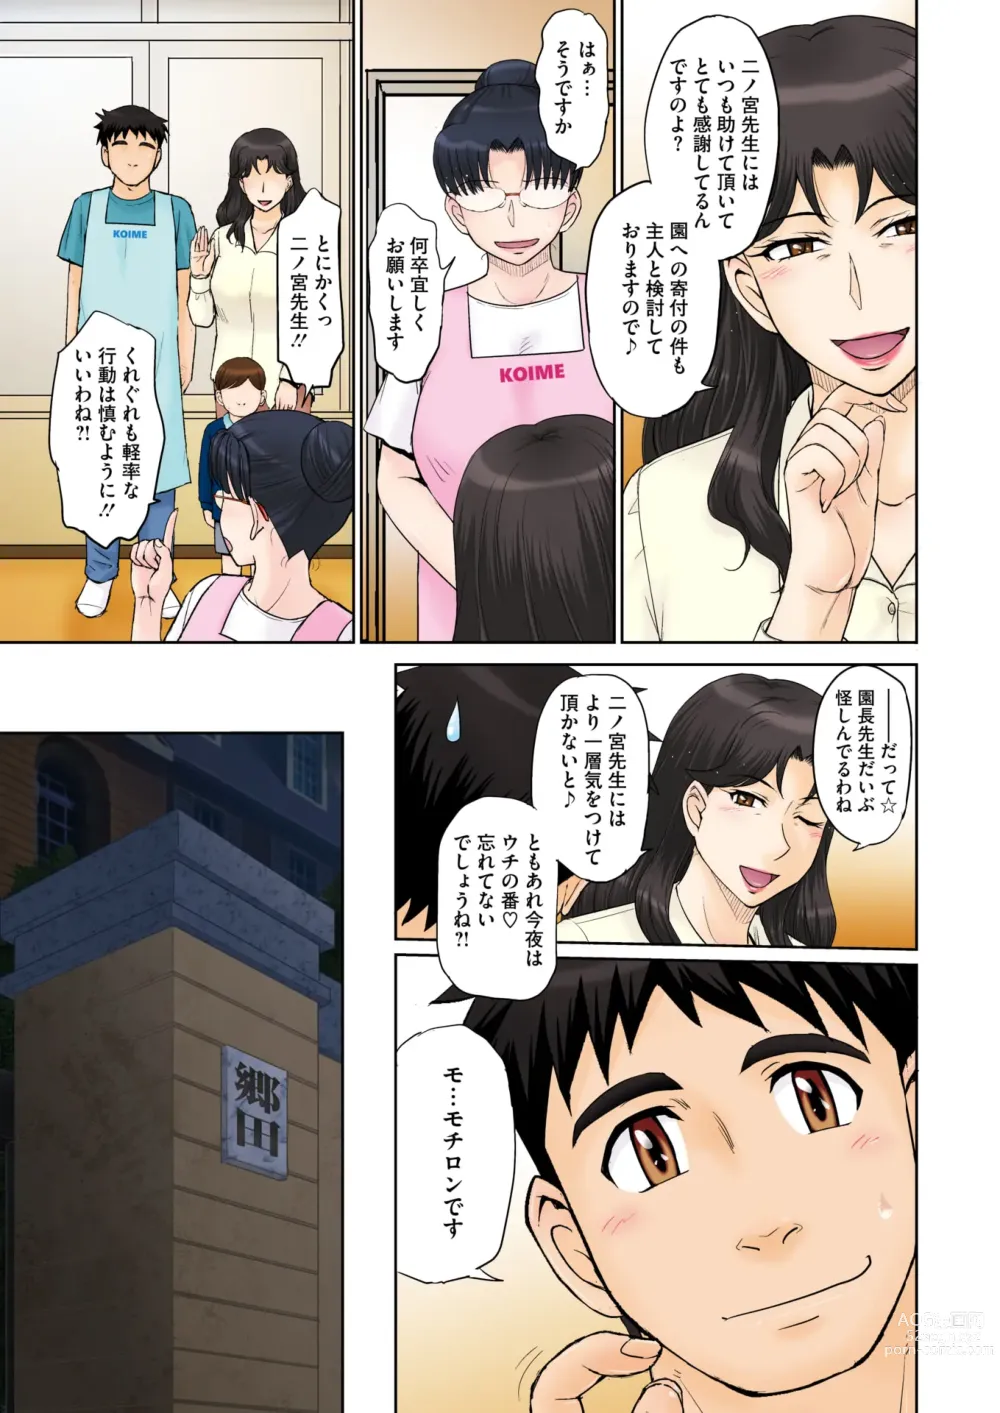 Page 6 of manga COMIC HOTMiLK Koime Vol. 42